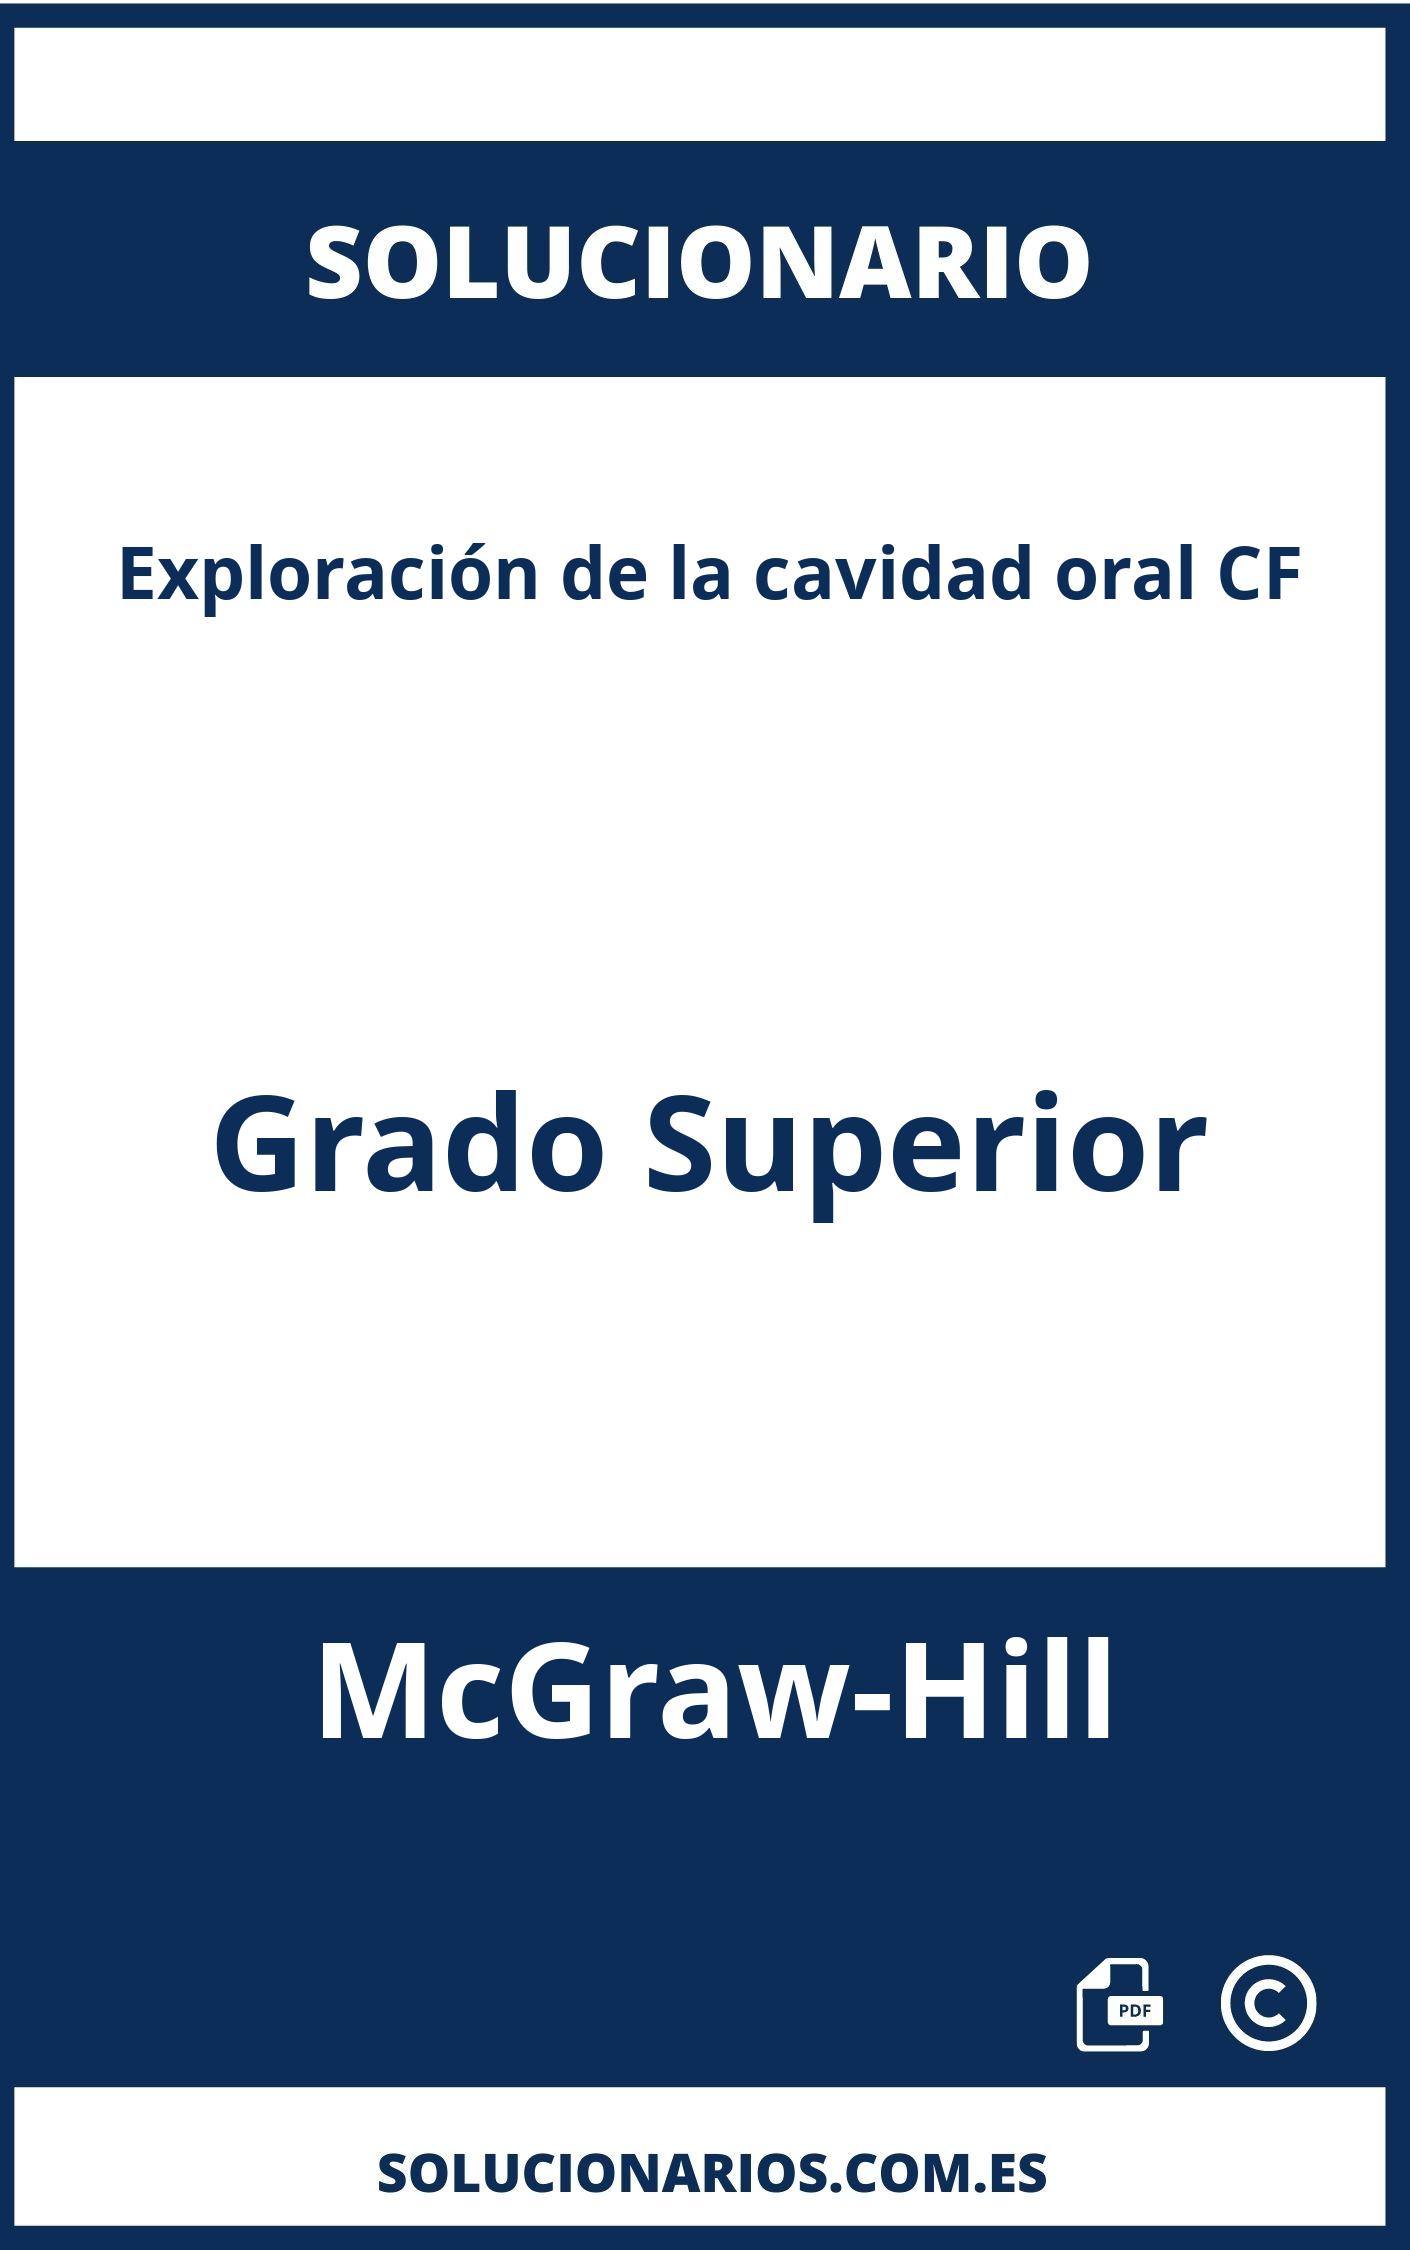 Solucionario Exploración de la cavidad oral CF Grado Superior McGraw-Hill